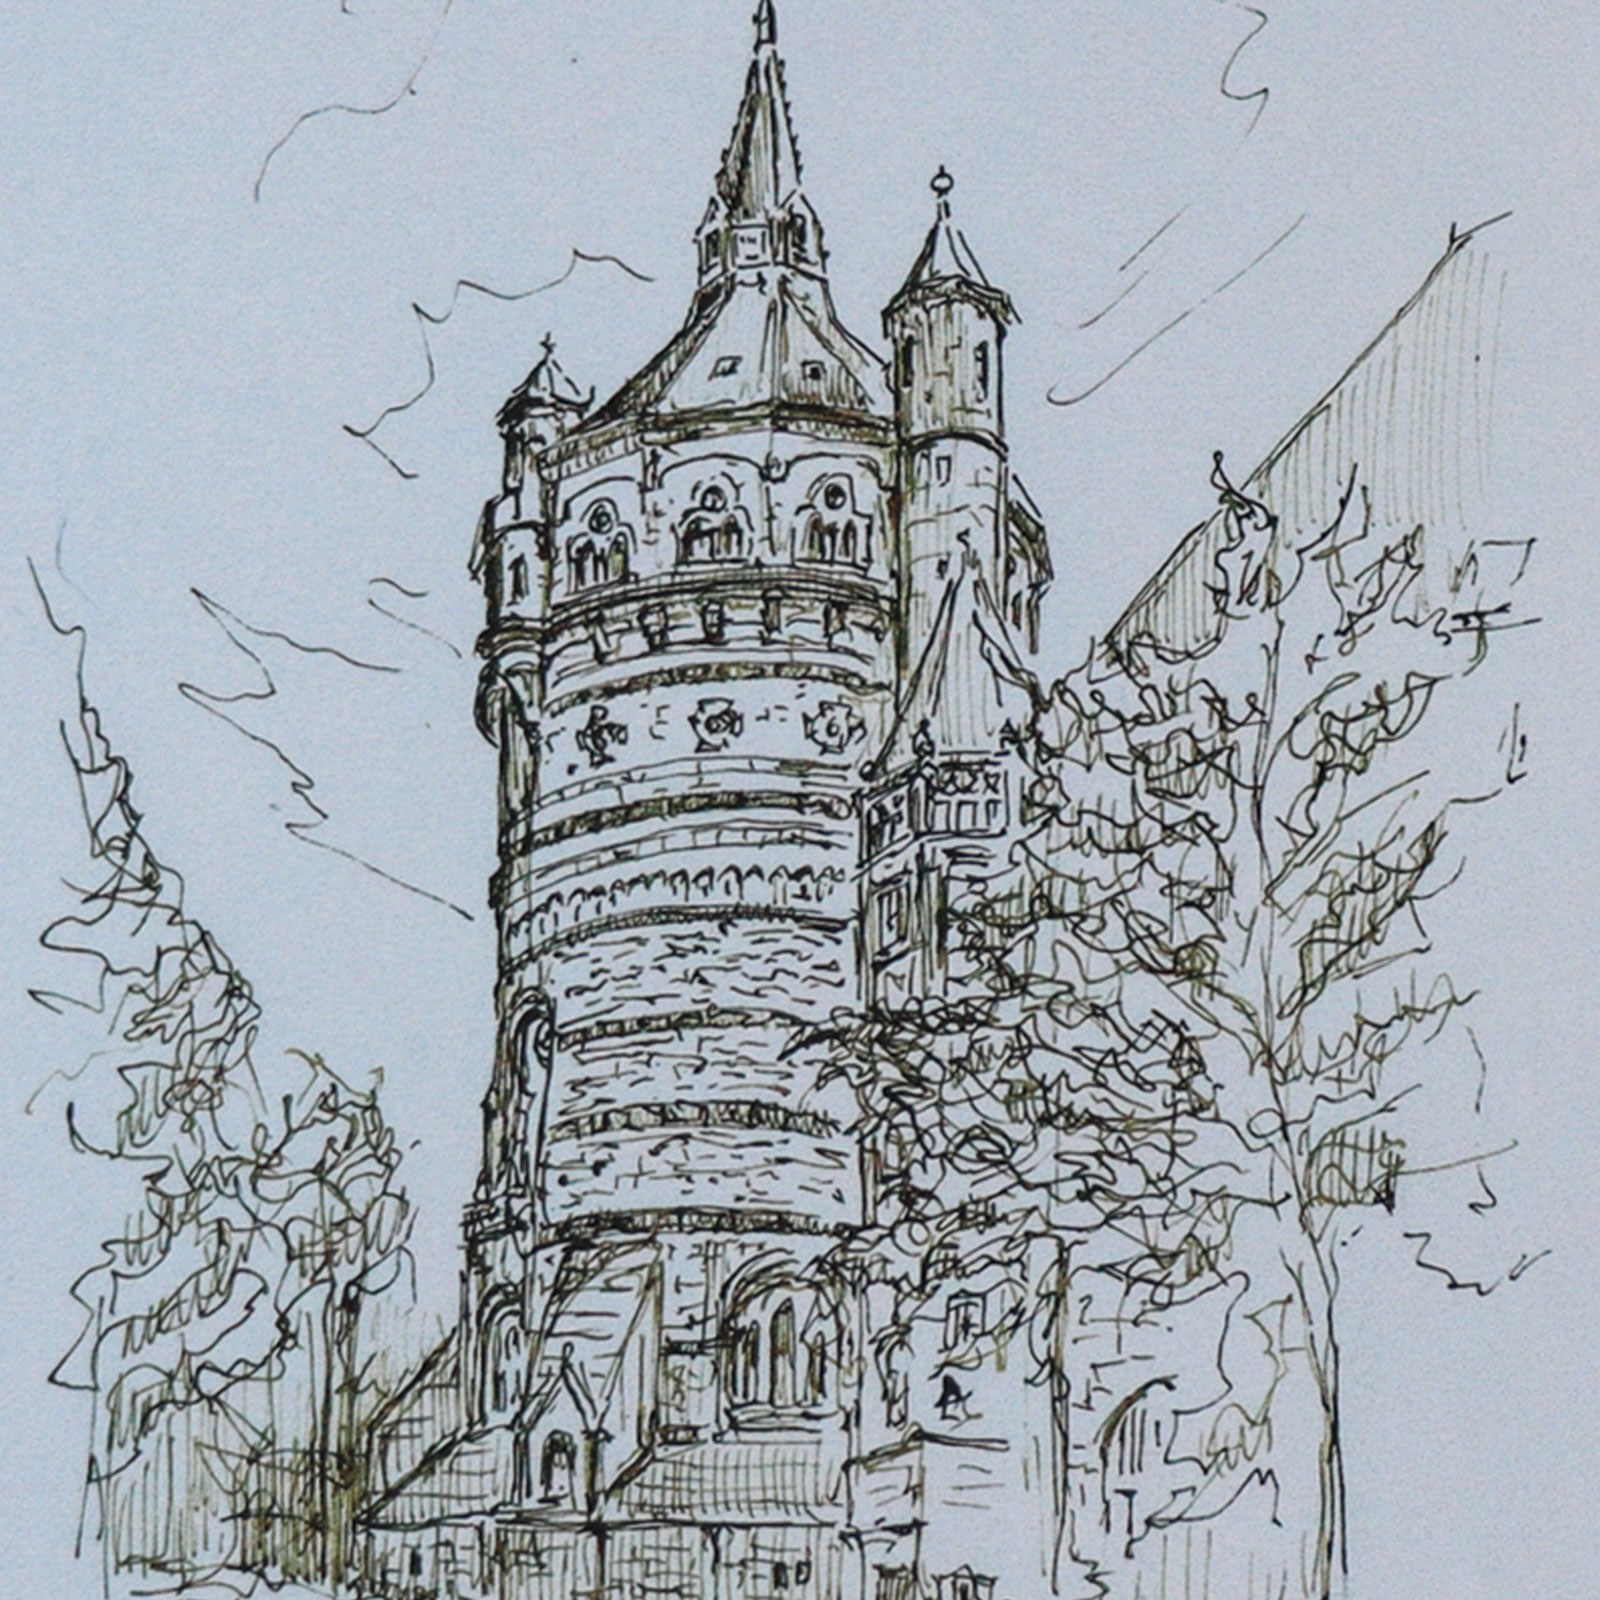 Ein detailiertes Bild des Wasserturms.